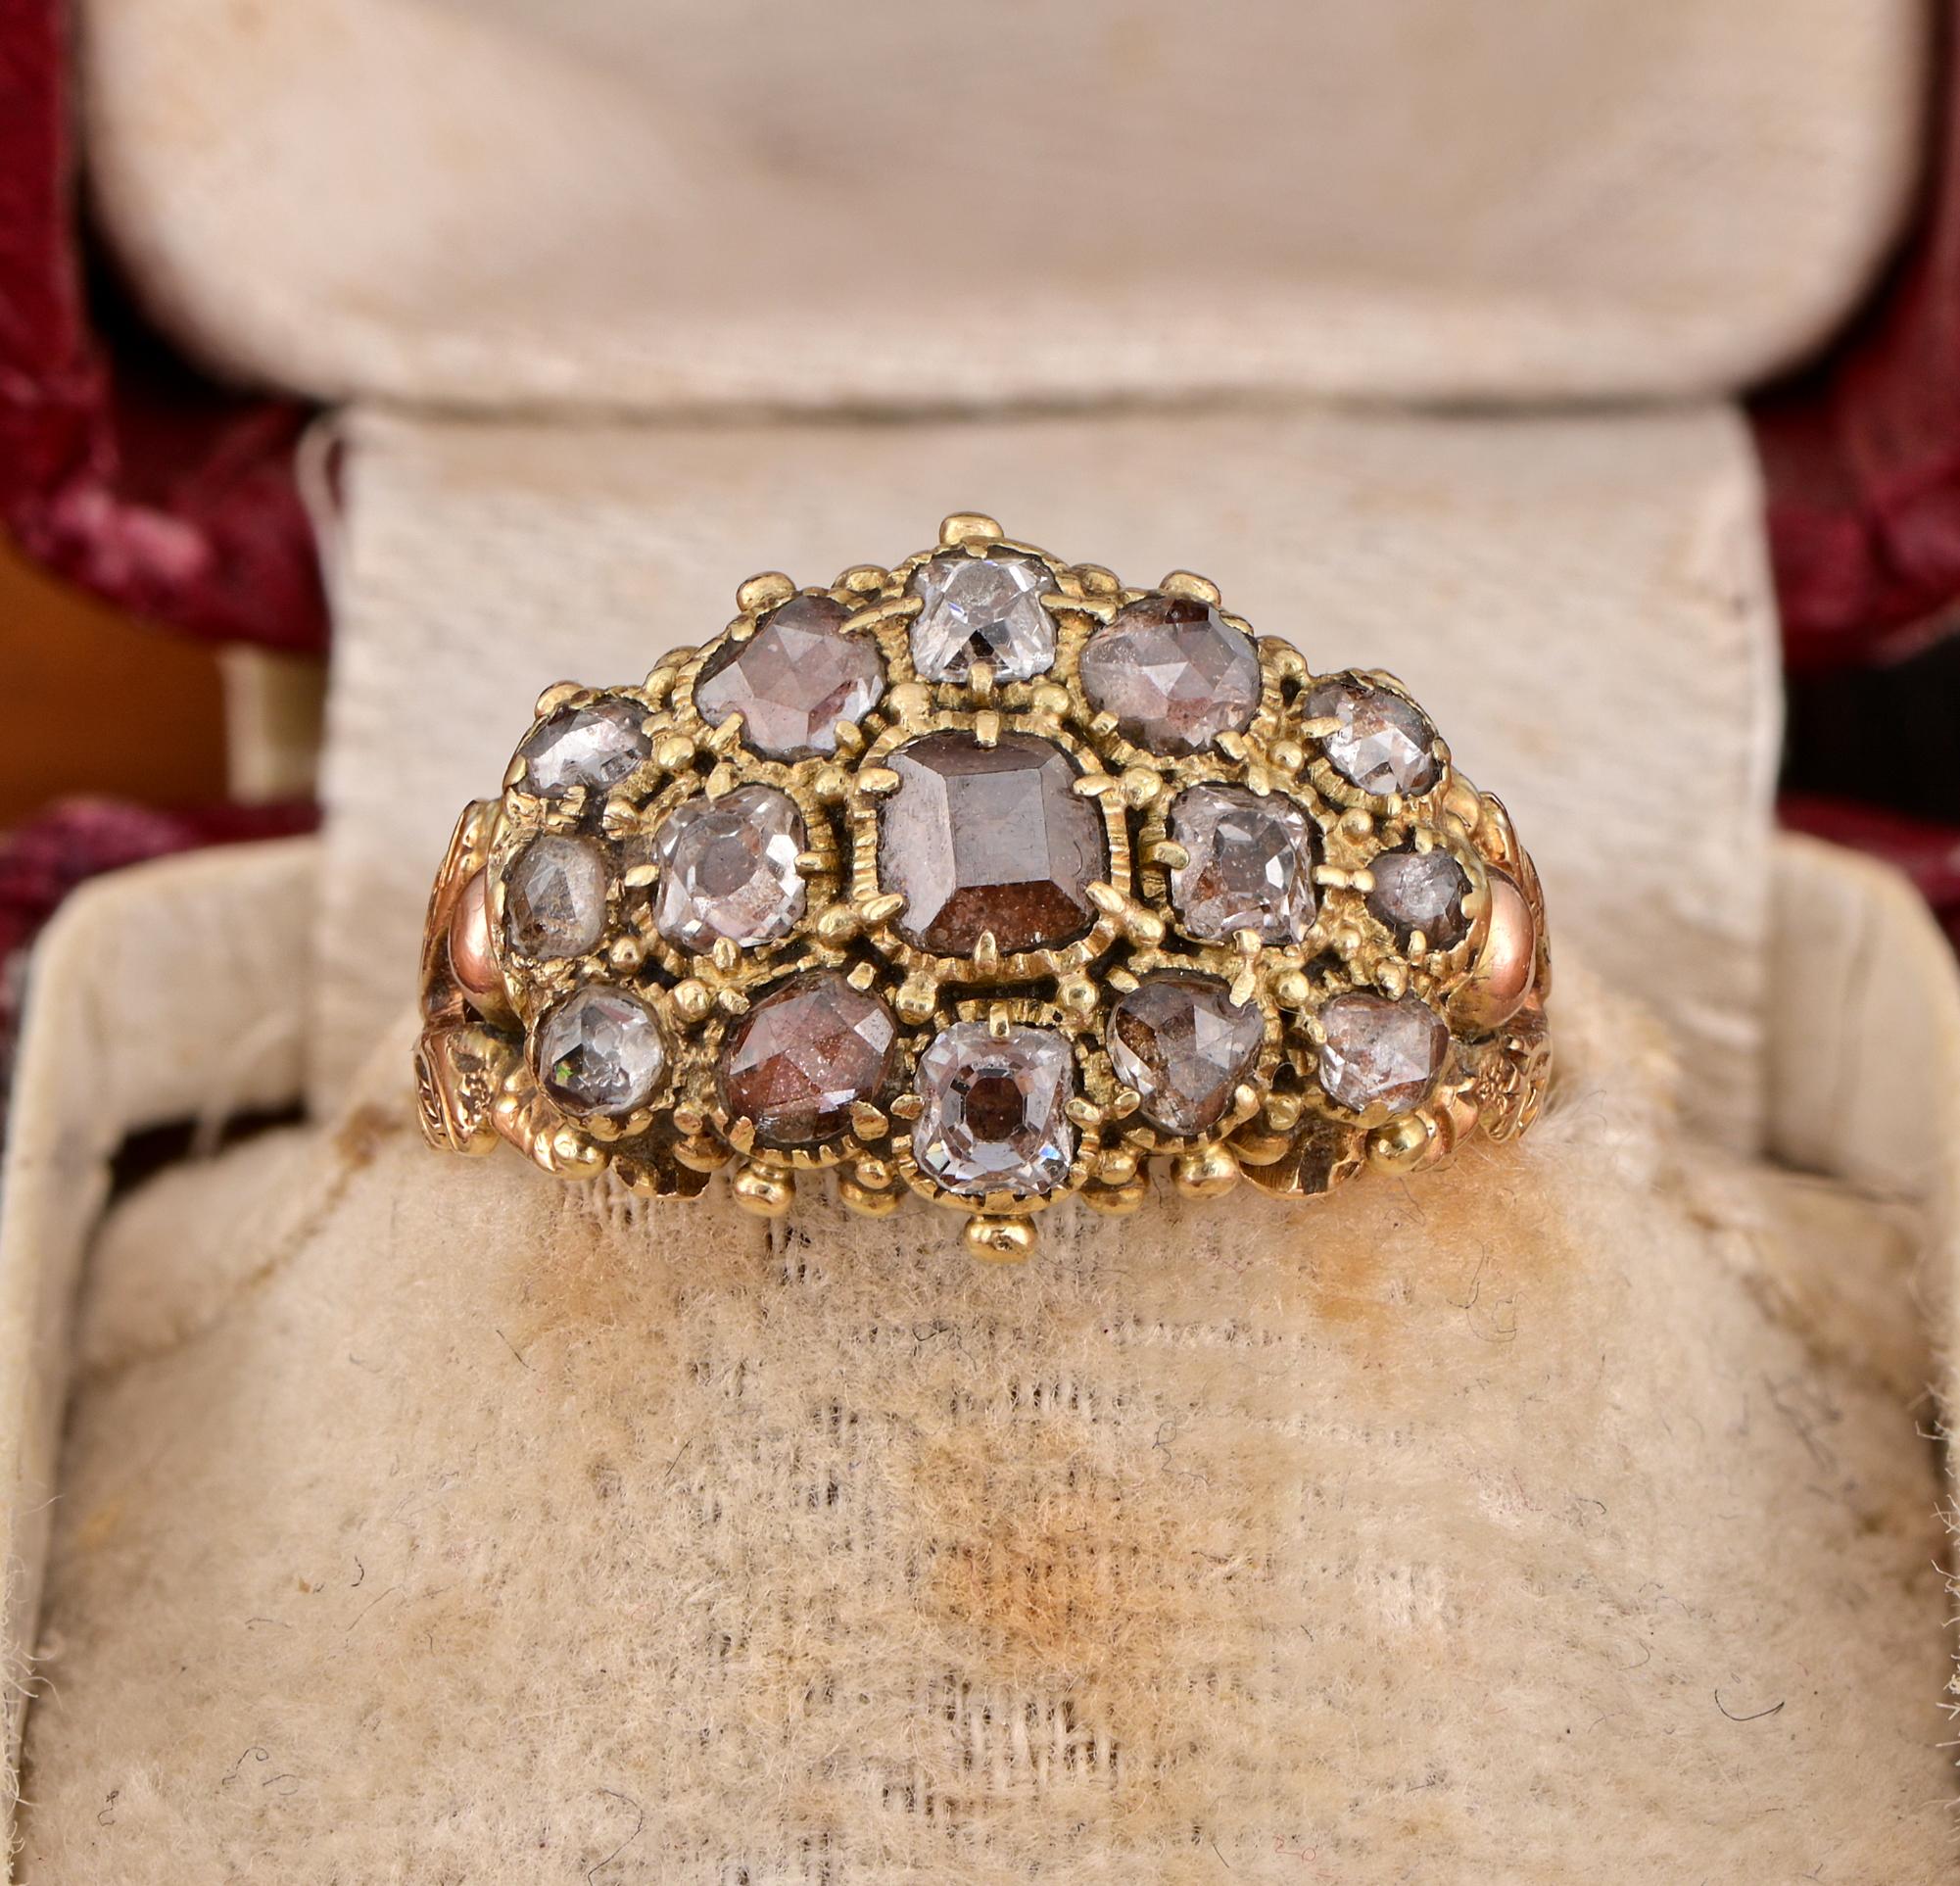 Georgisches Gedenken
Dieser einfach exquisite antike georgianische Ring ist 1790/1810 ca. - englischer Herkunft
Ein seltenes Beispiel für Gedenkschmuck, der in der georgischen Zeit als Erinnerungs- oder Trauerschmuck verwendet wurde
Es preist die